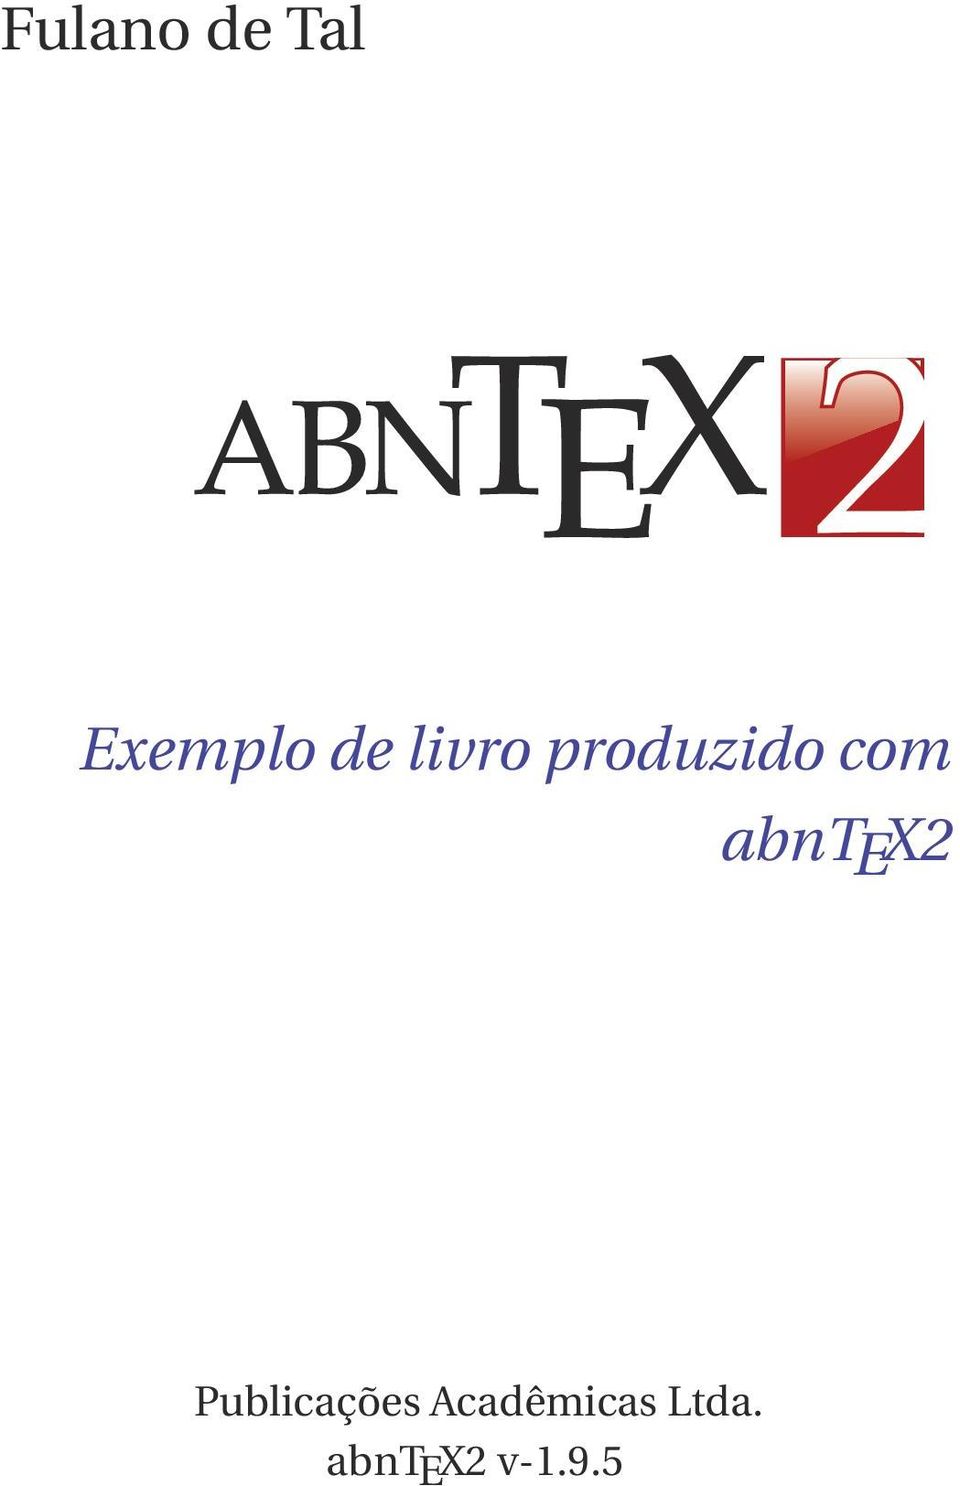 abntex2 Publicações